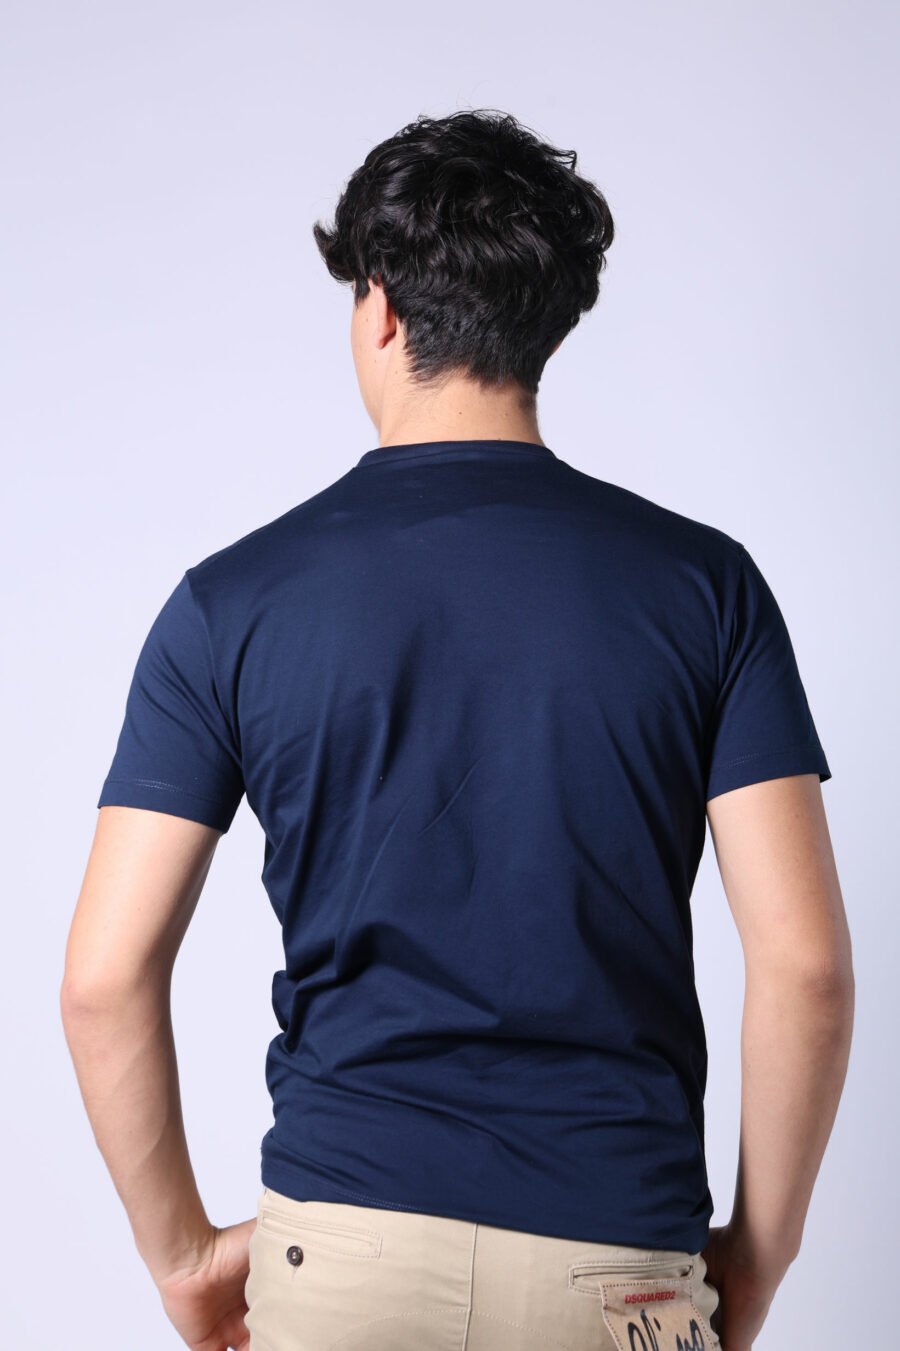 T-shirt bleu foncé avec mini-logo rouge dans un graphisme de feuilles - Untitled Catalog 05626